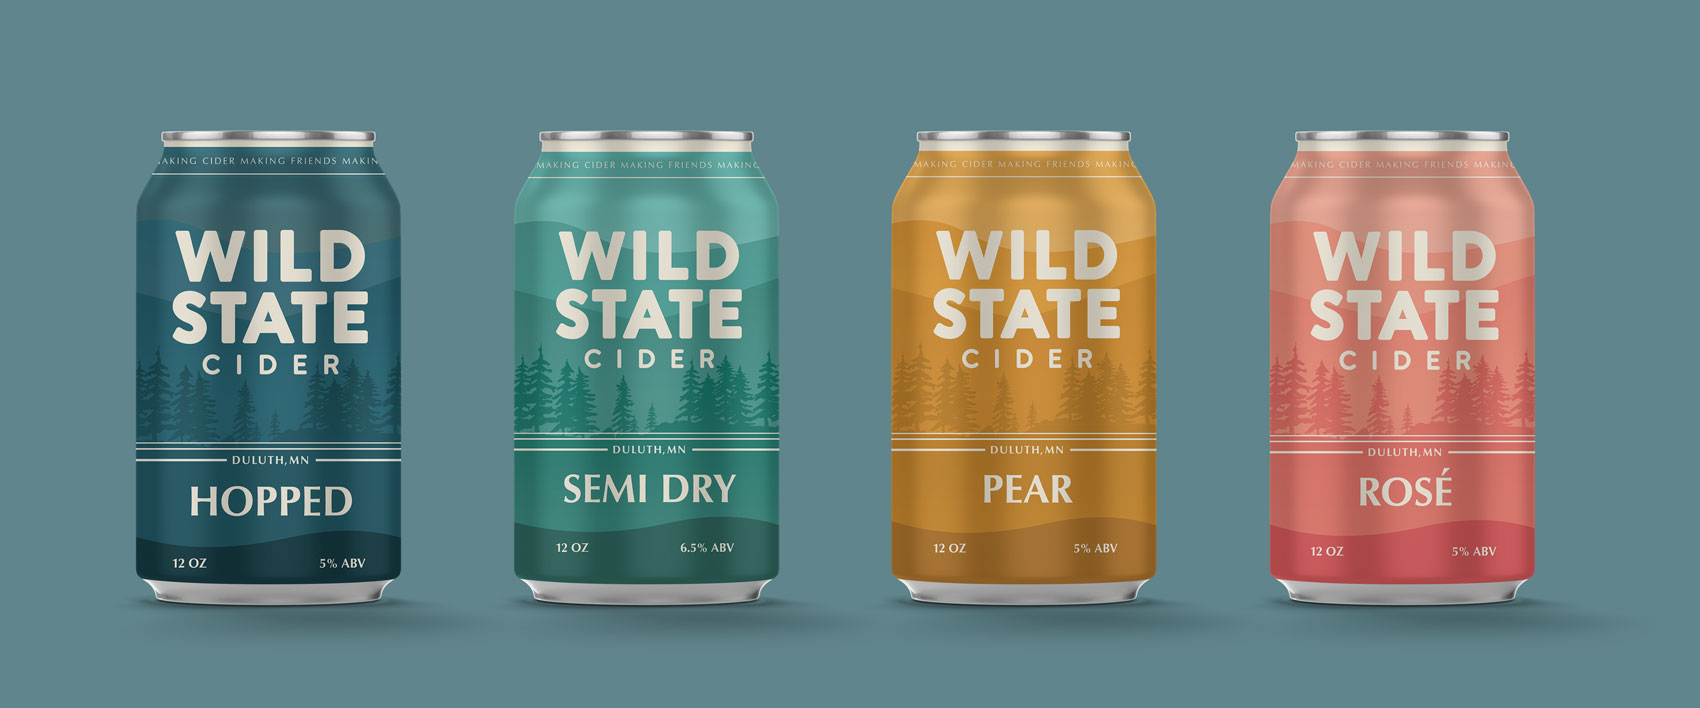 Wild state cider